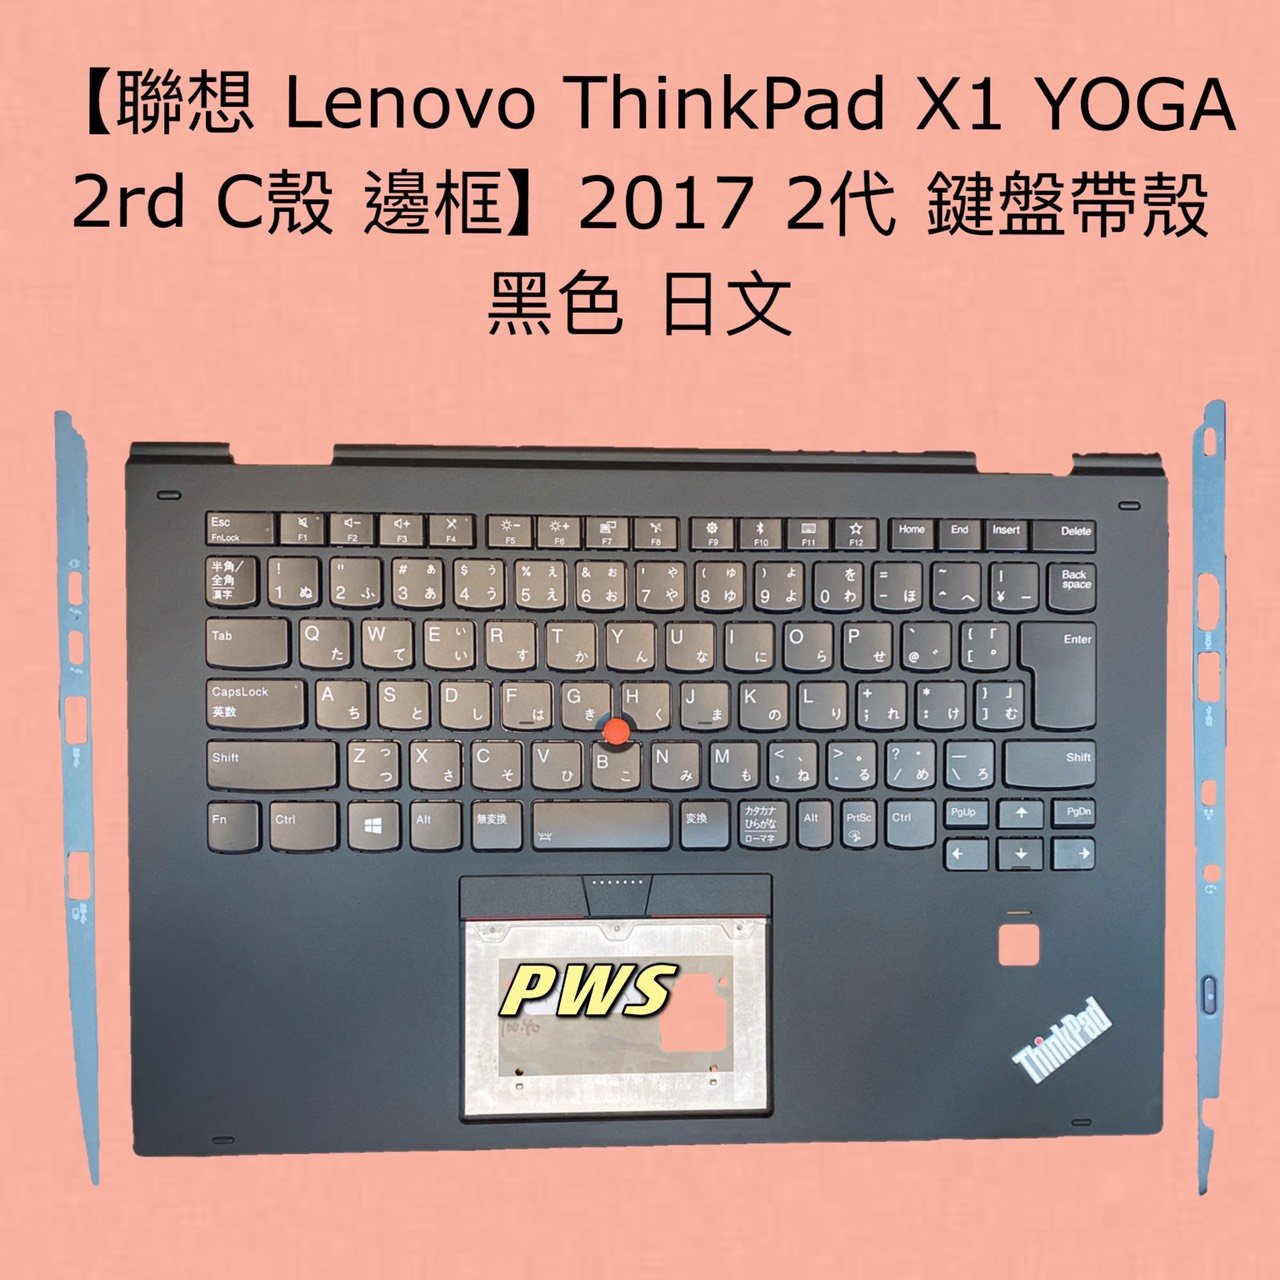 全新聯想Lenovo ThinkPad X1 YOGA 2rd C殼邊框】2017 2代鍵盤帶殼黑色